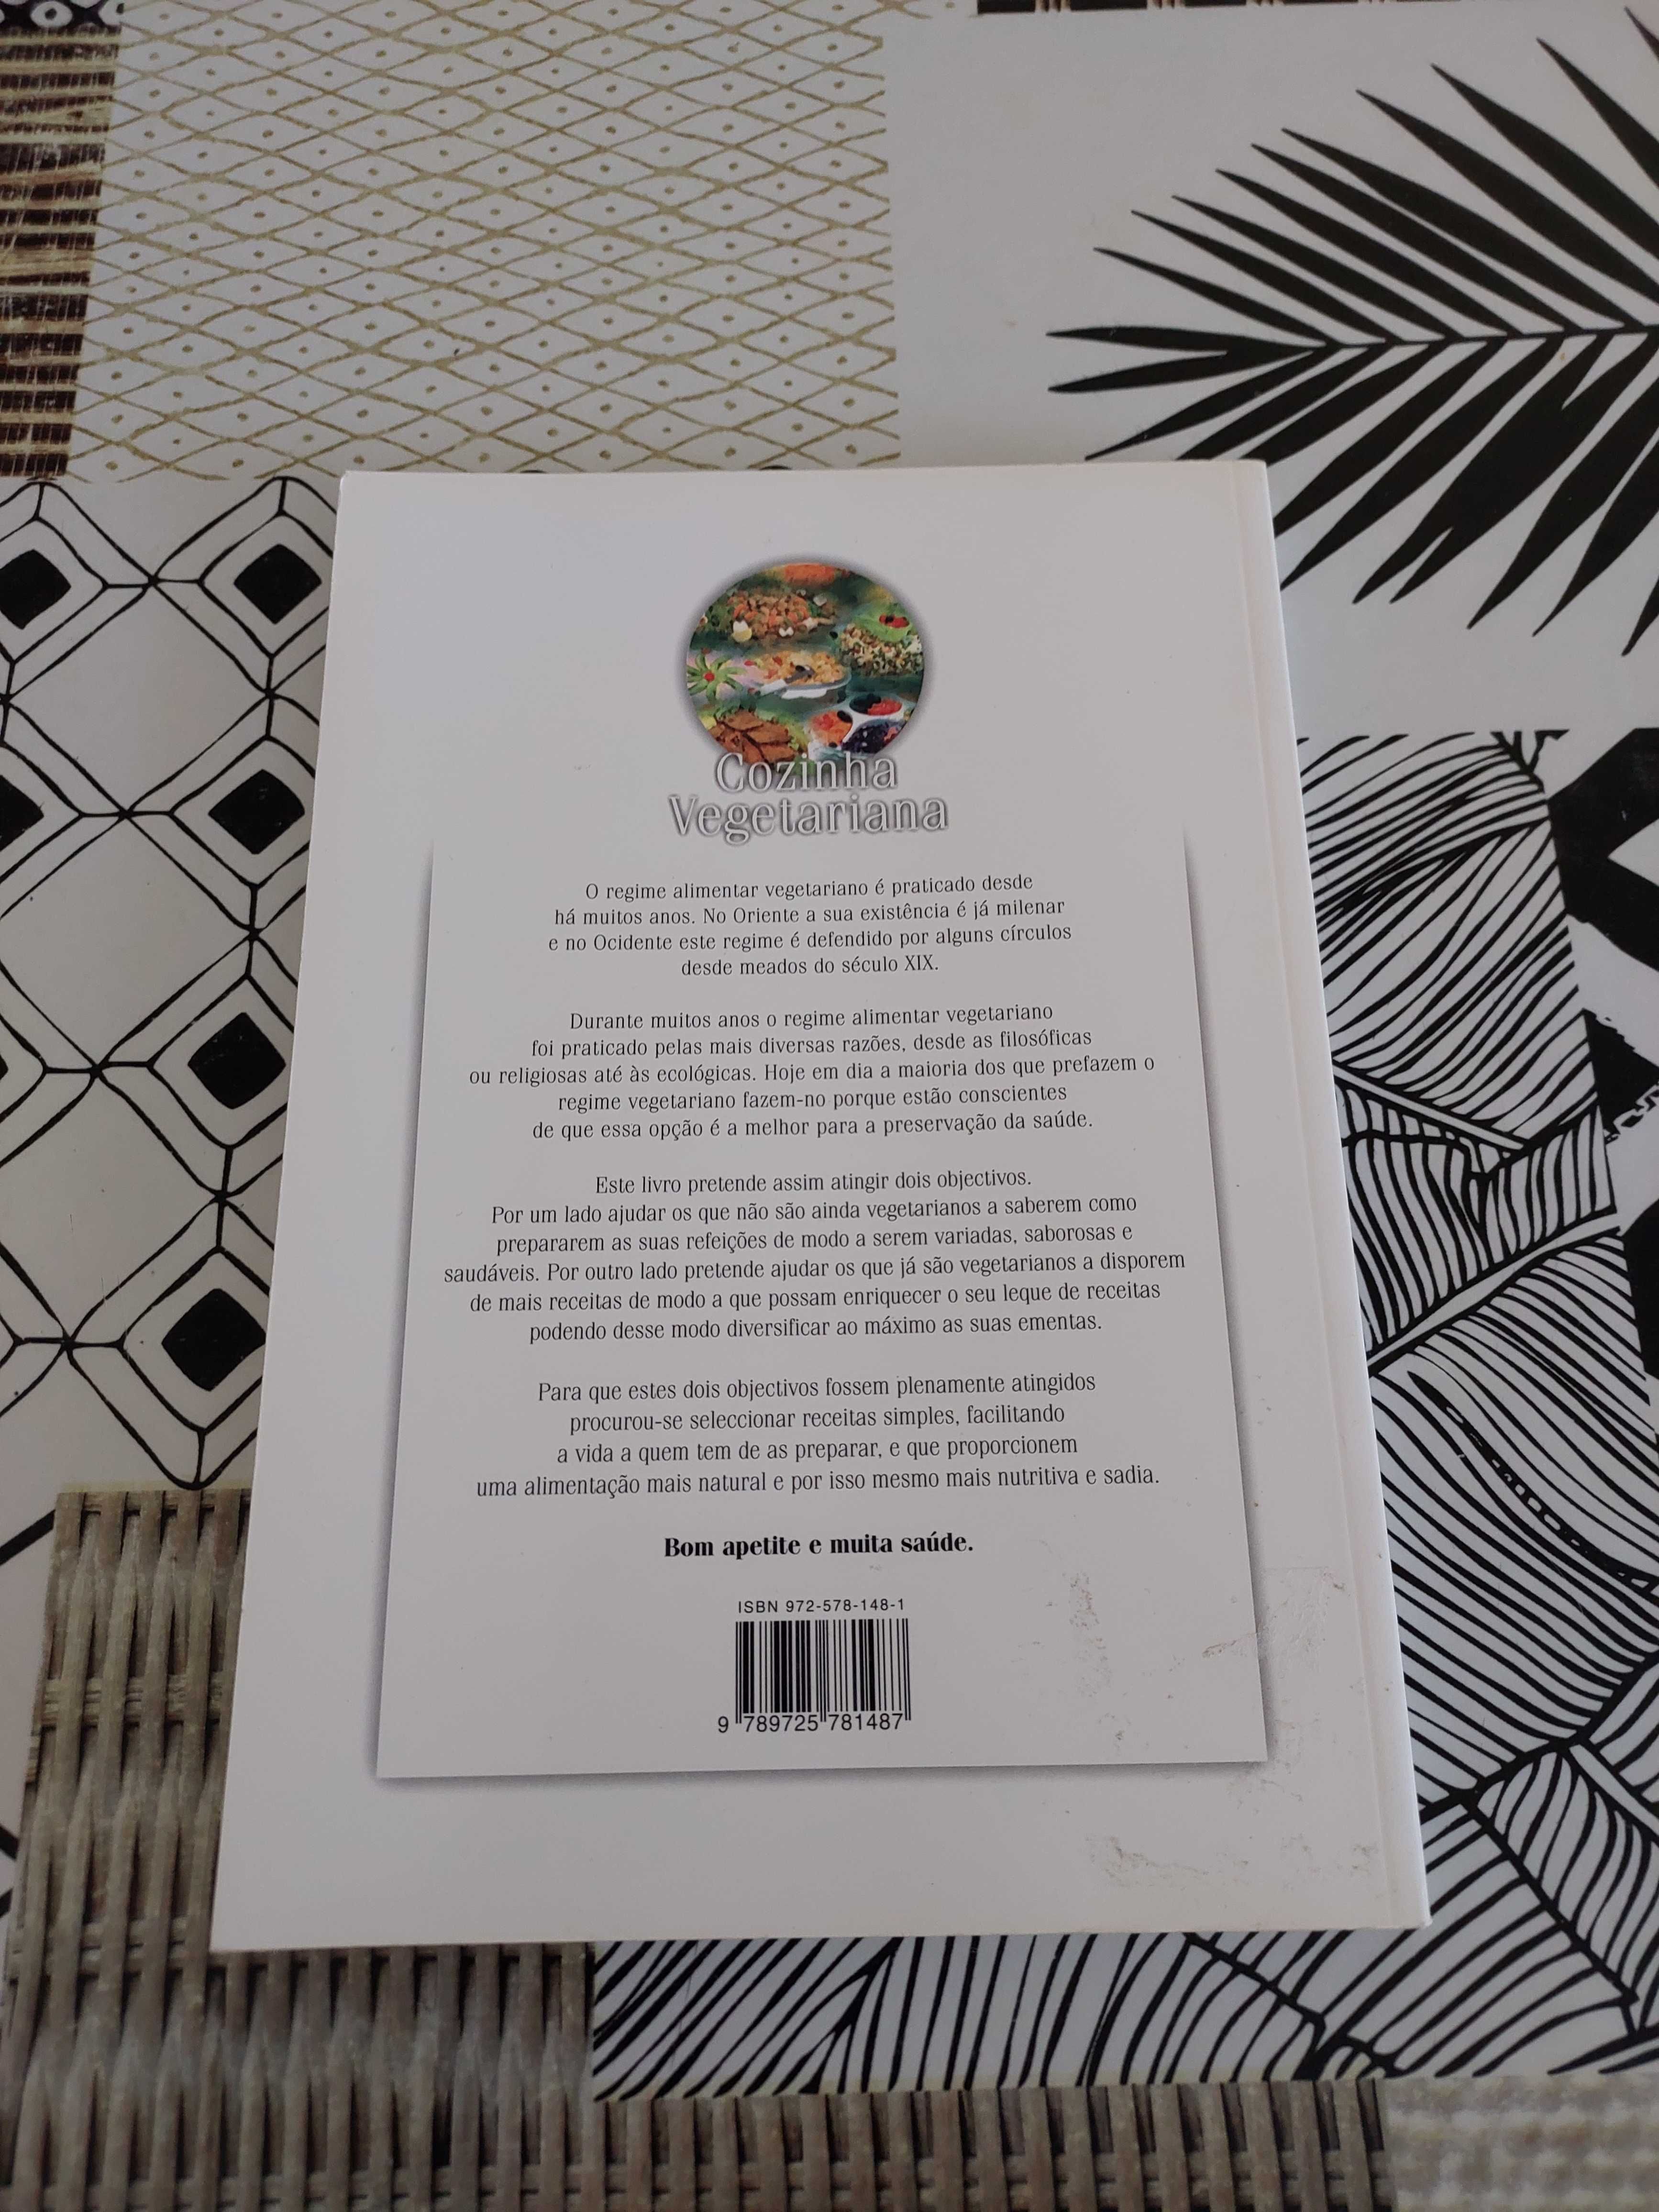 Livro "Cozinha Vegetariana" de Maria E. C. Carvalho